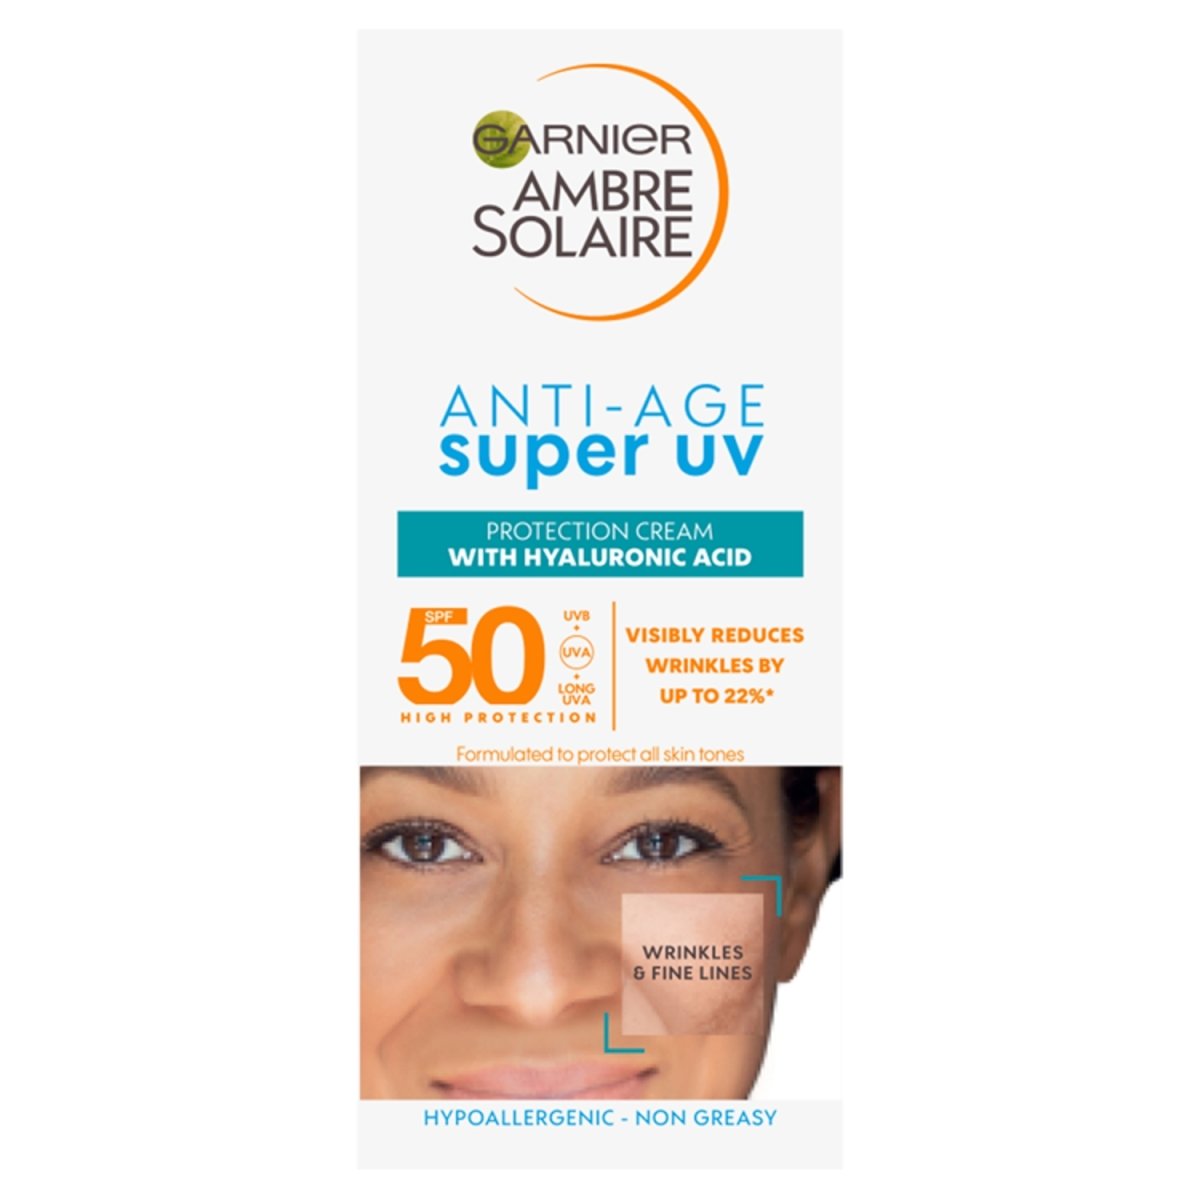 Ambre Solaire Super UV Anti-age Face Protection Cream SPF50+ Tube 50ml - Intamarque 3600542397704